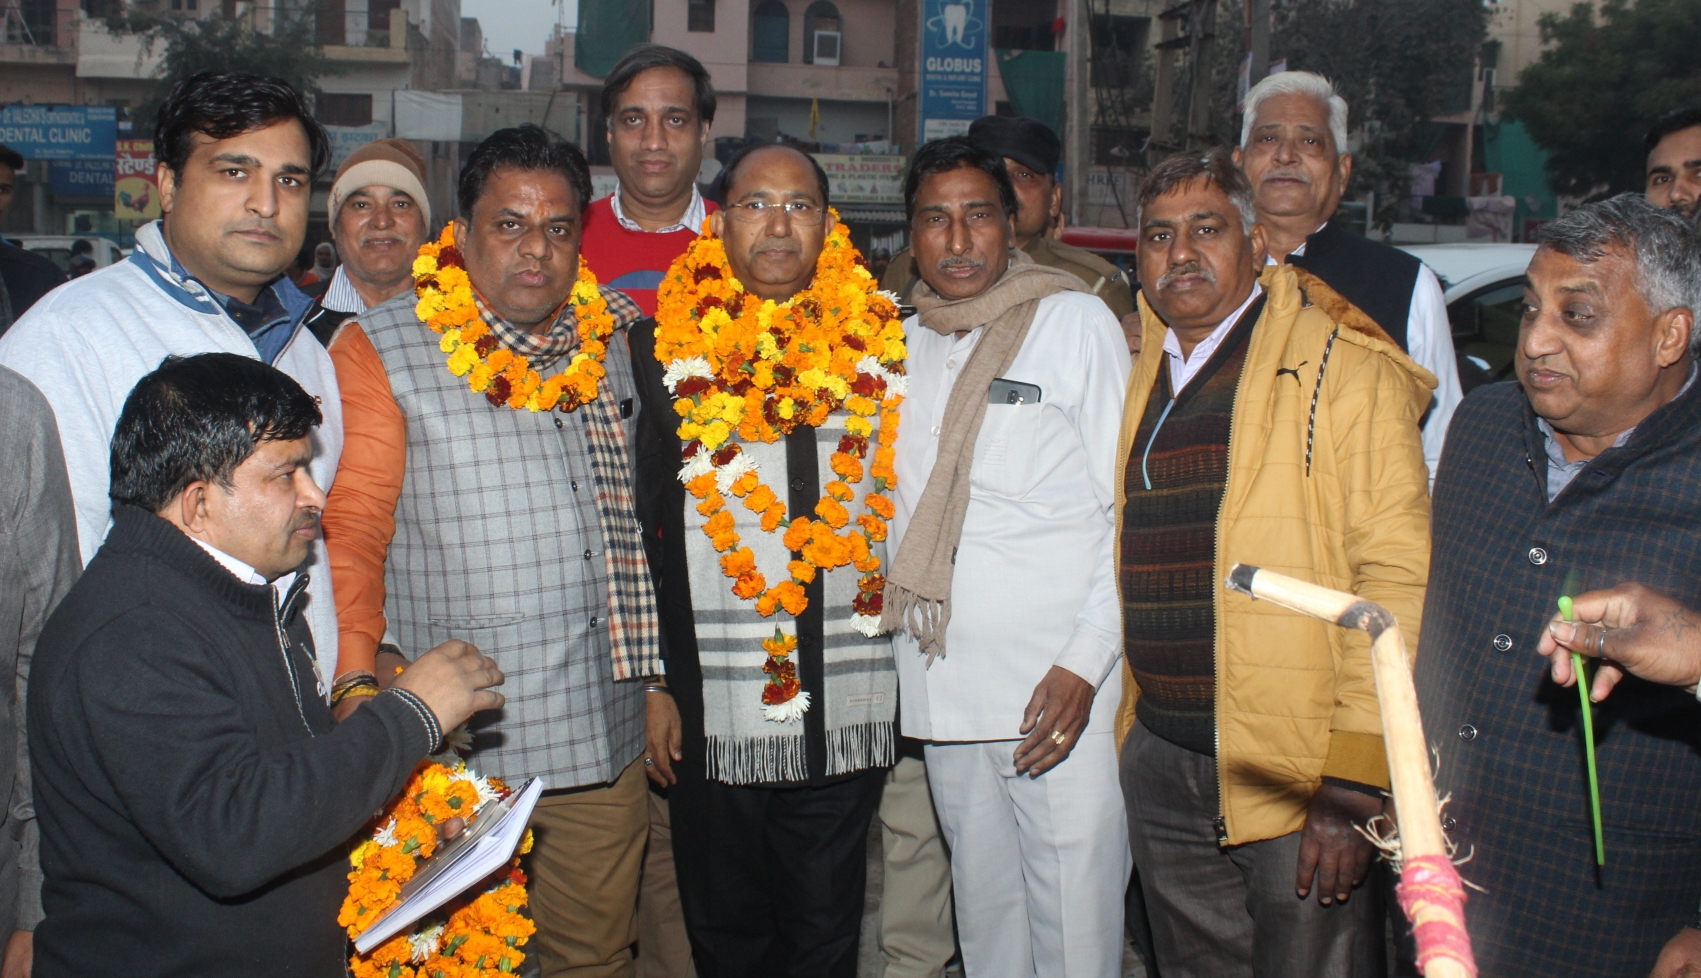 विधायक नरेंद्र गुप्ता का पार्षद विनोद भाटी के नेतृत्व में क्षेत्रवासियों ने फूलमाला पहनाकर जोरदार स्वागत किया